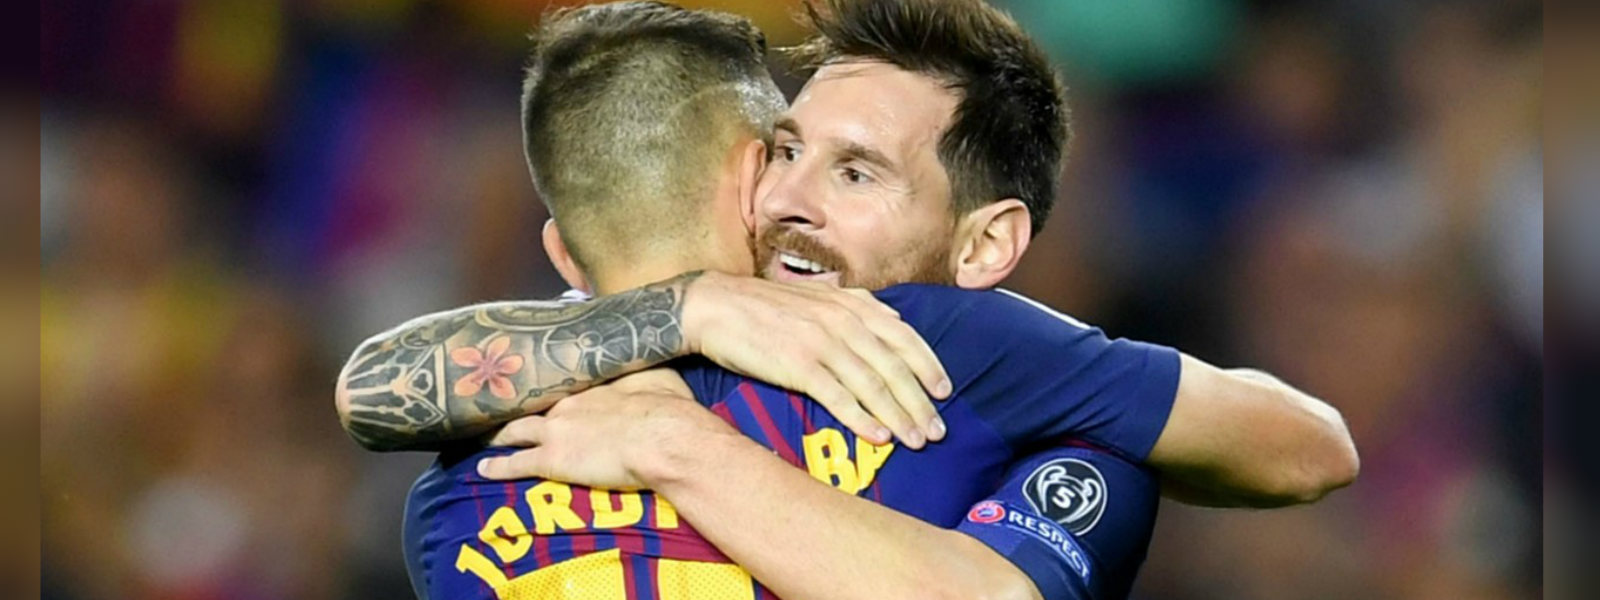 Spain's Jordi Alba backs Messi's performance at WC